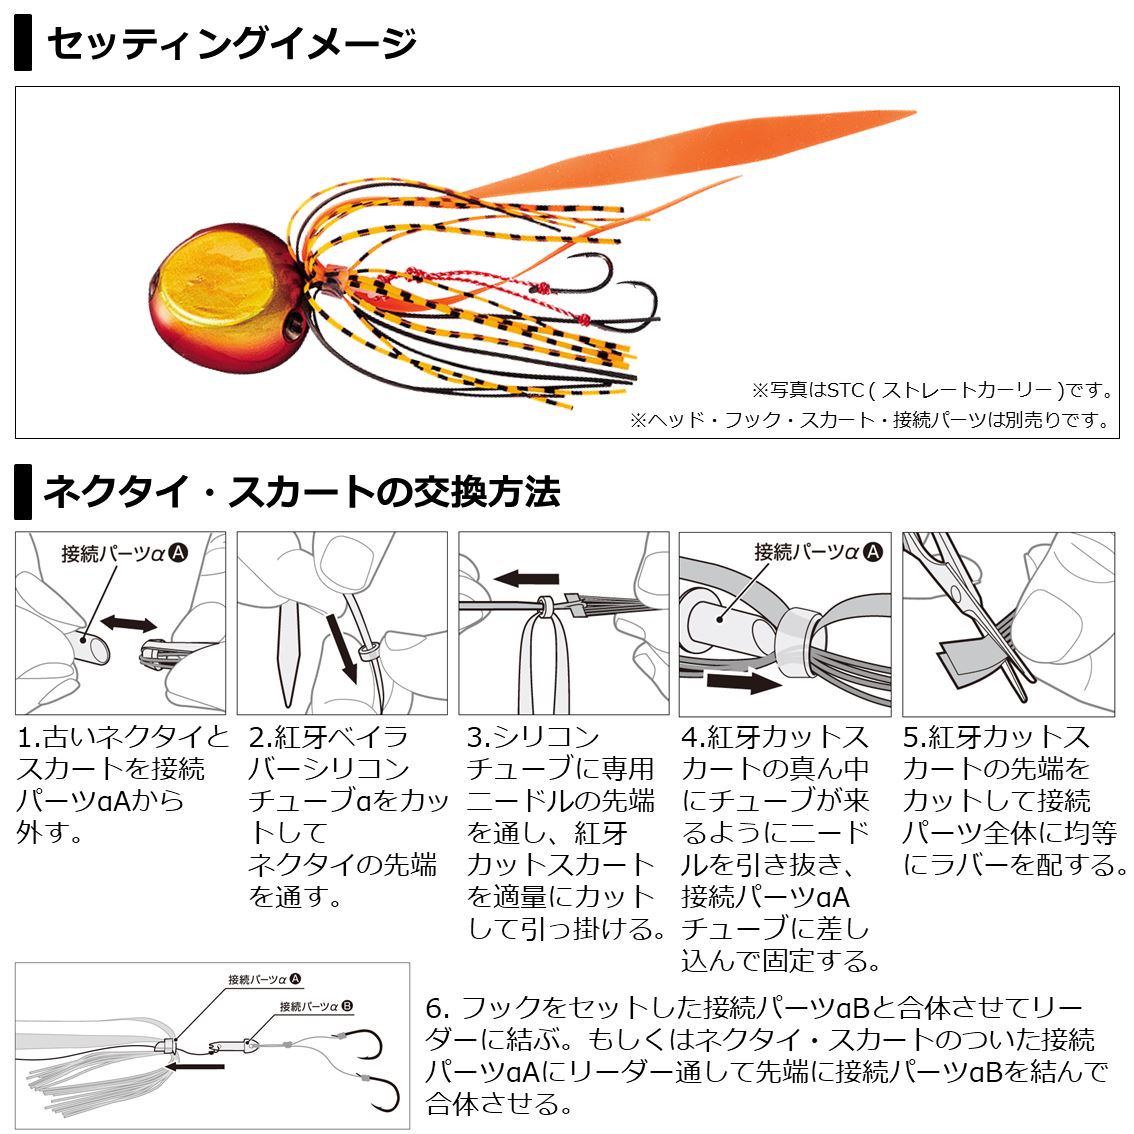 kawazuradoストアメジャークラフト タコロッド ベイト TACO クロステージ 5.0フィート 3代目 釣り竿 CRXJ-B502H